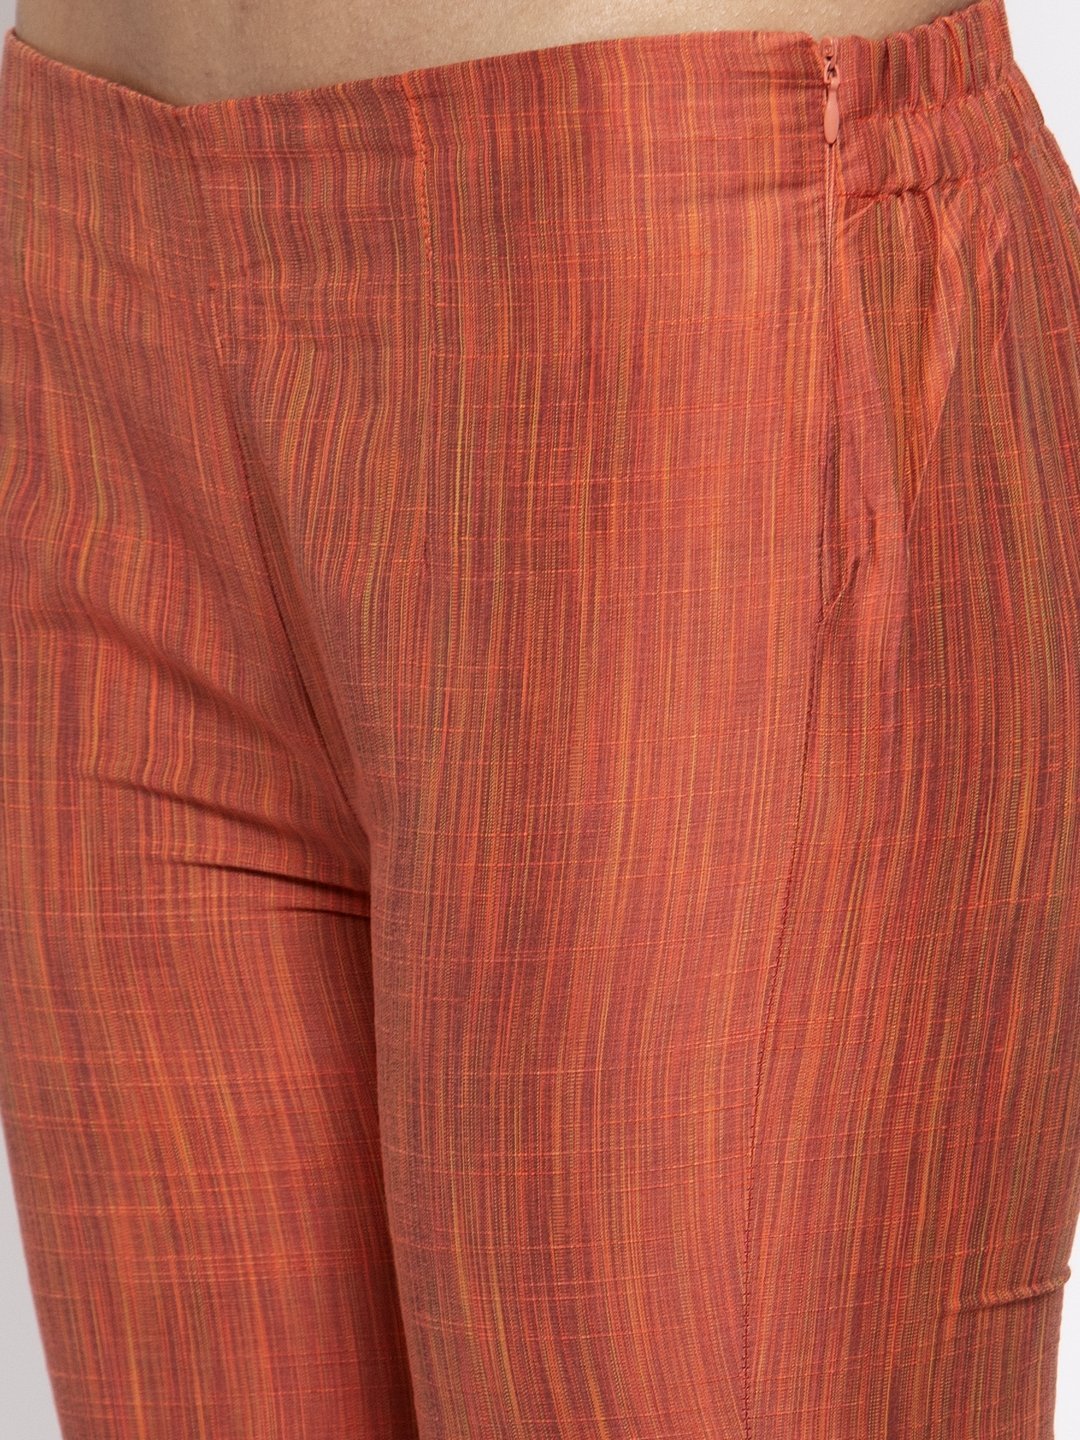 Women's Orange Self Striped Kurta with Trousers & Floal Georgette Dupatta - Jompers